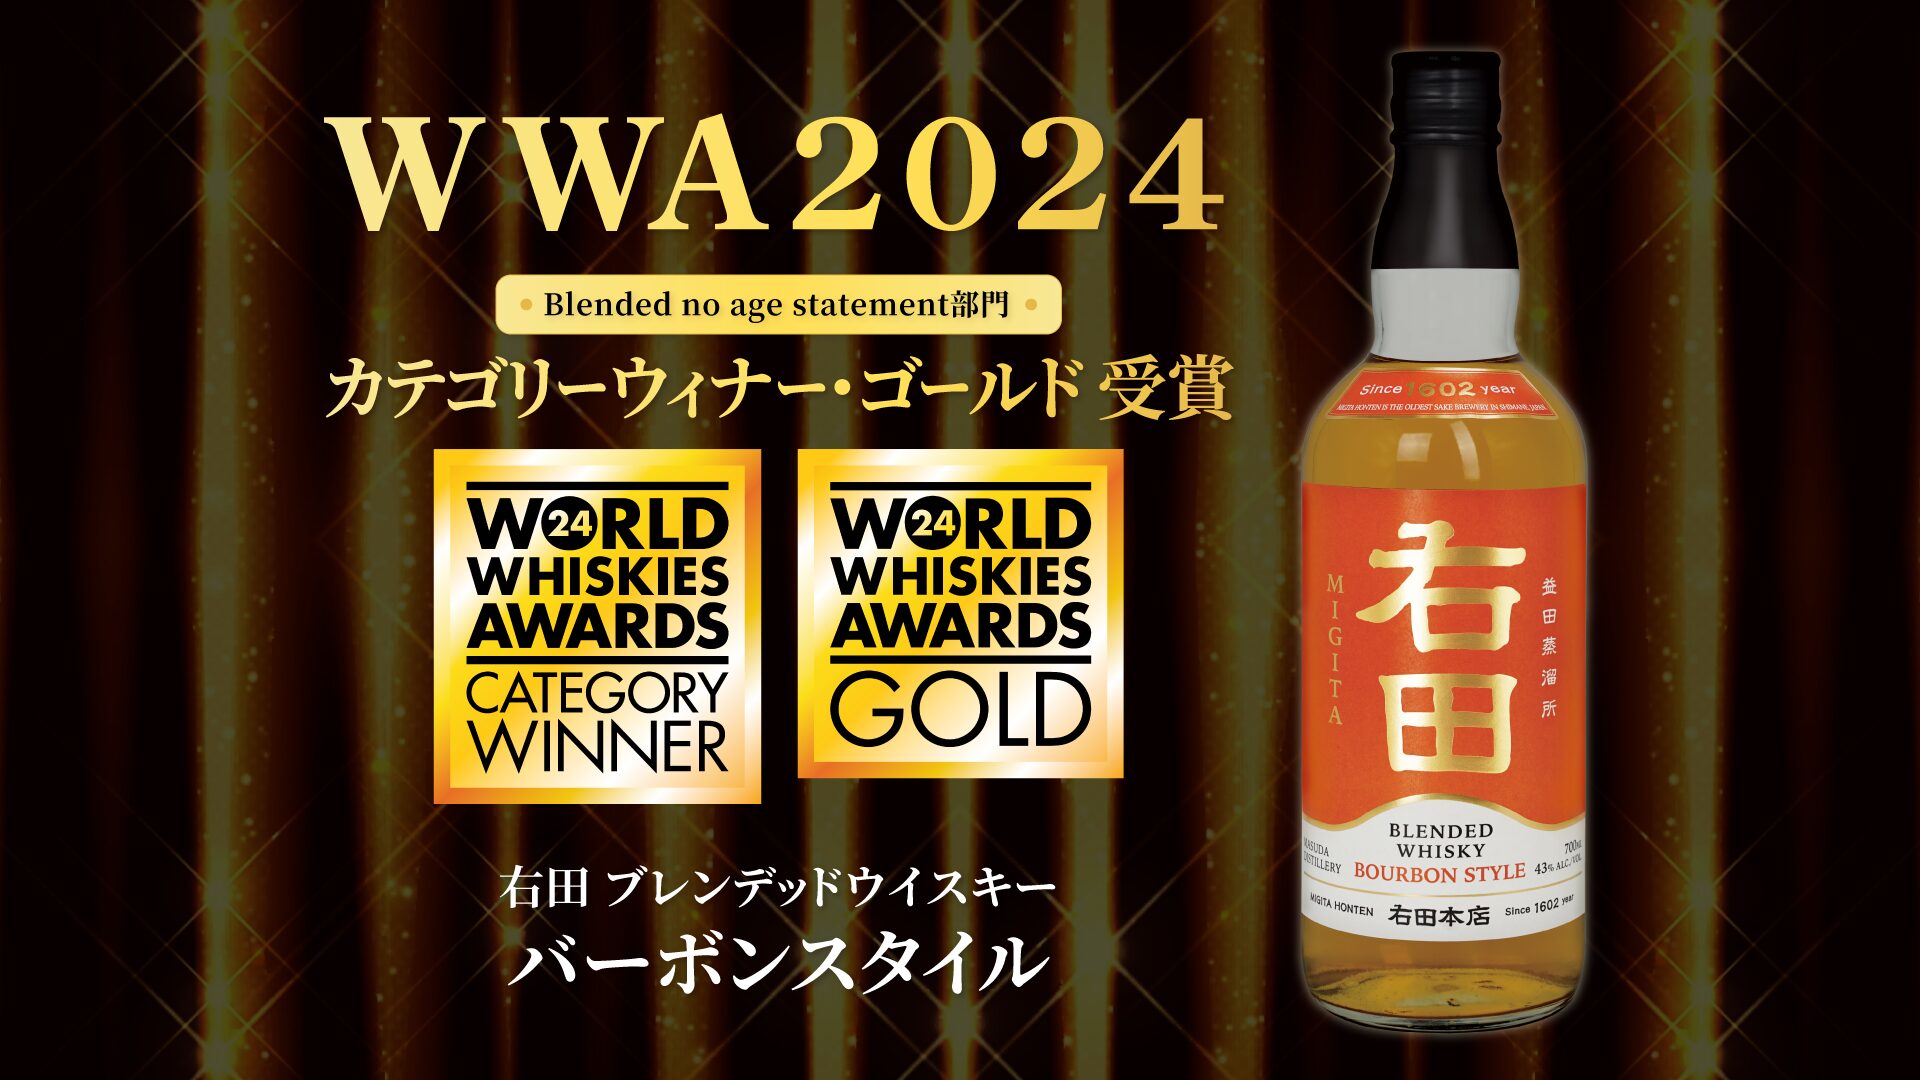 島根県最古の日本酒蔵が造る「右田ウイスキー」がWWA2024にて 